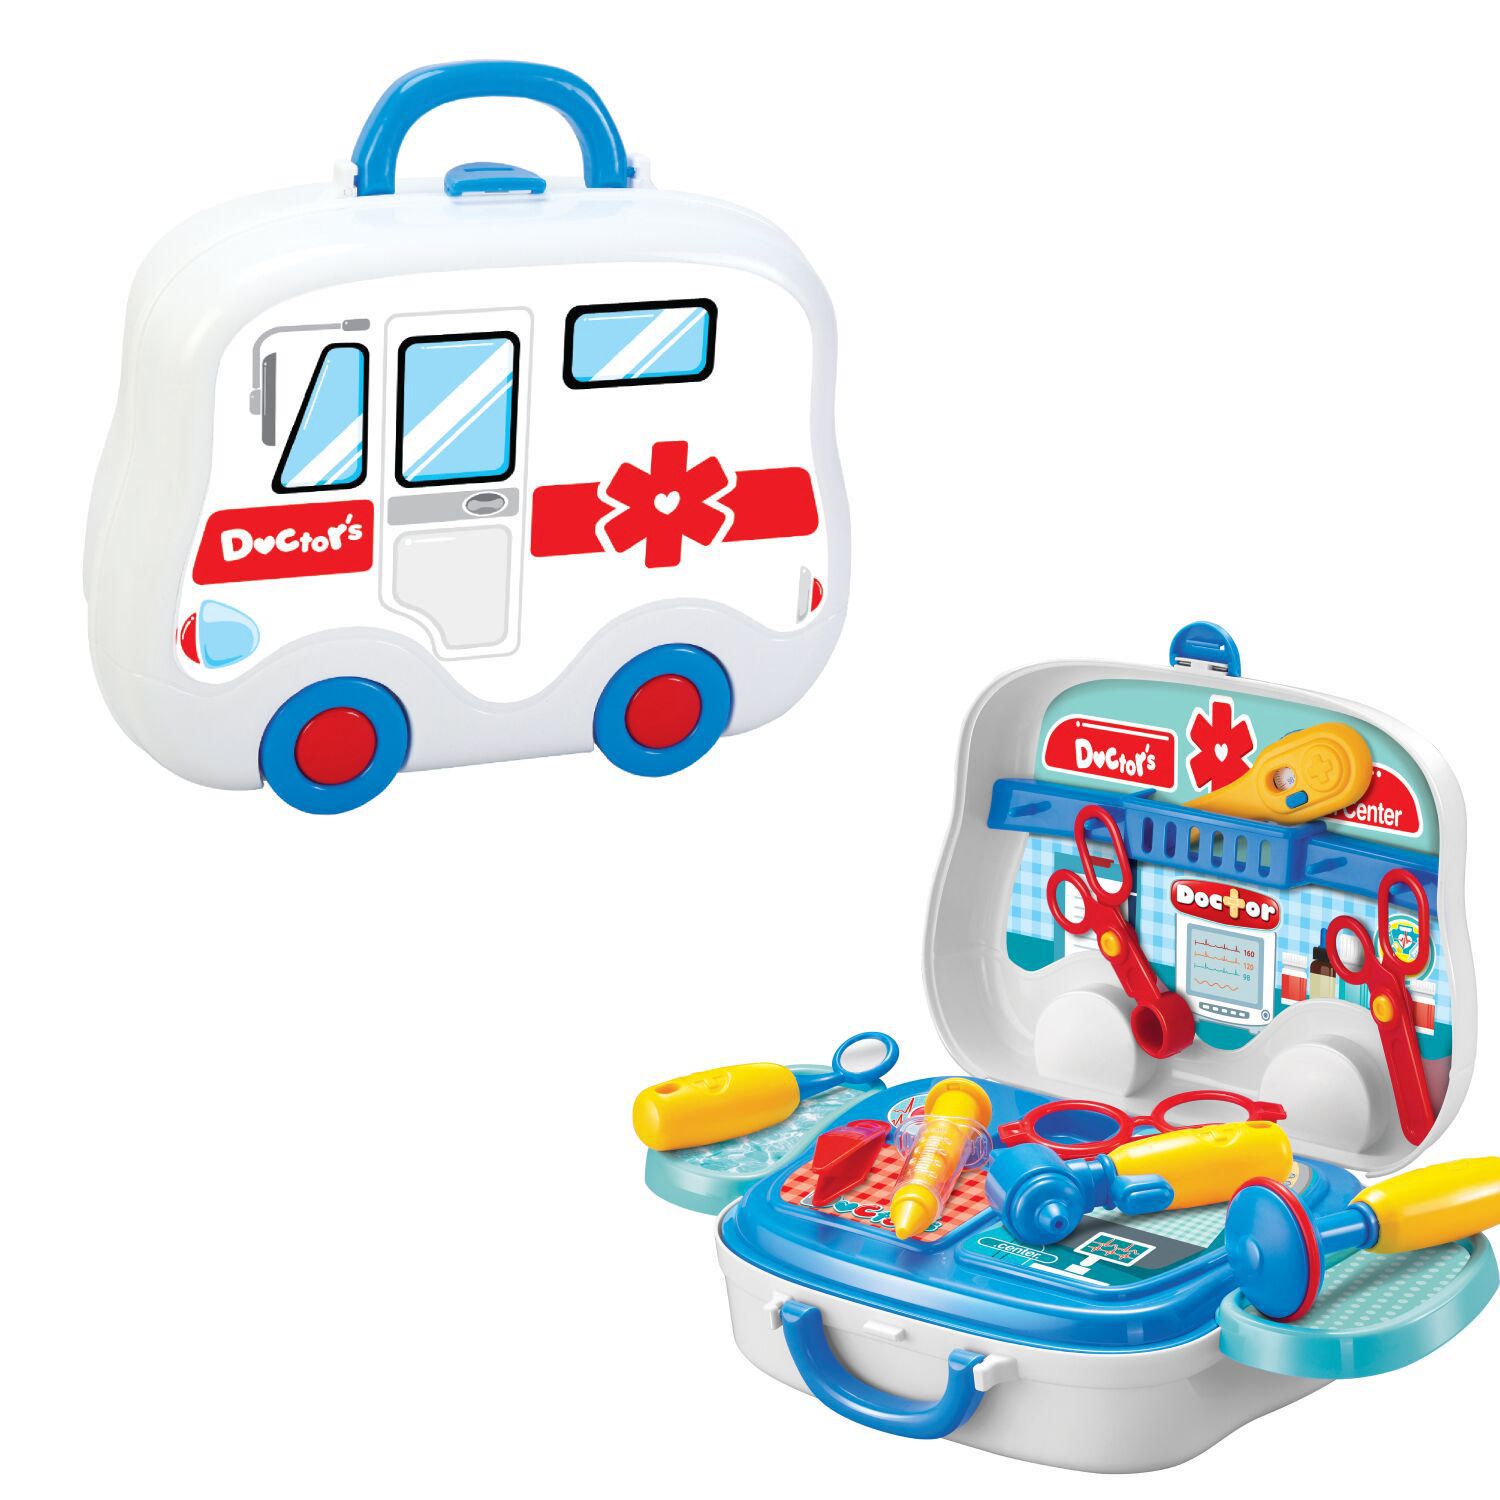 Ensemble d'outils de jouets pour enfants à emporter par Toy Chef.